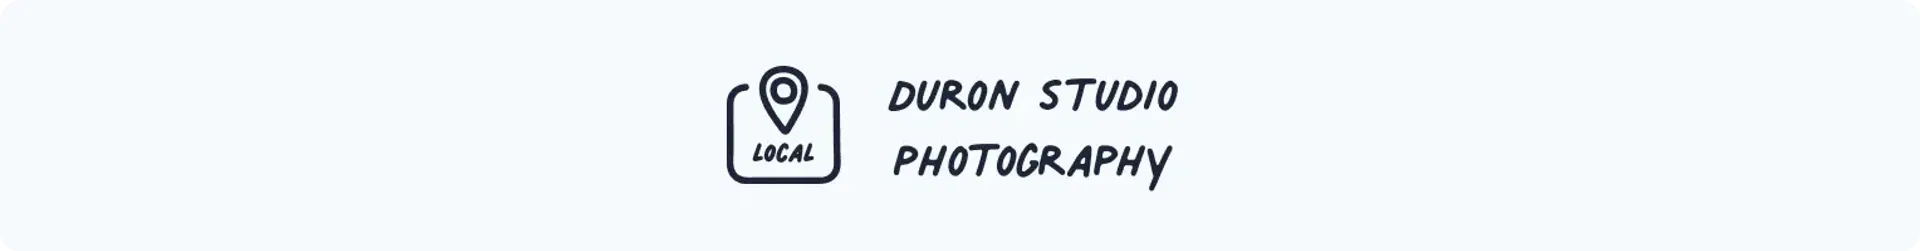 Duron studio photography